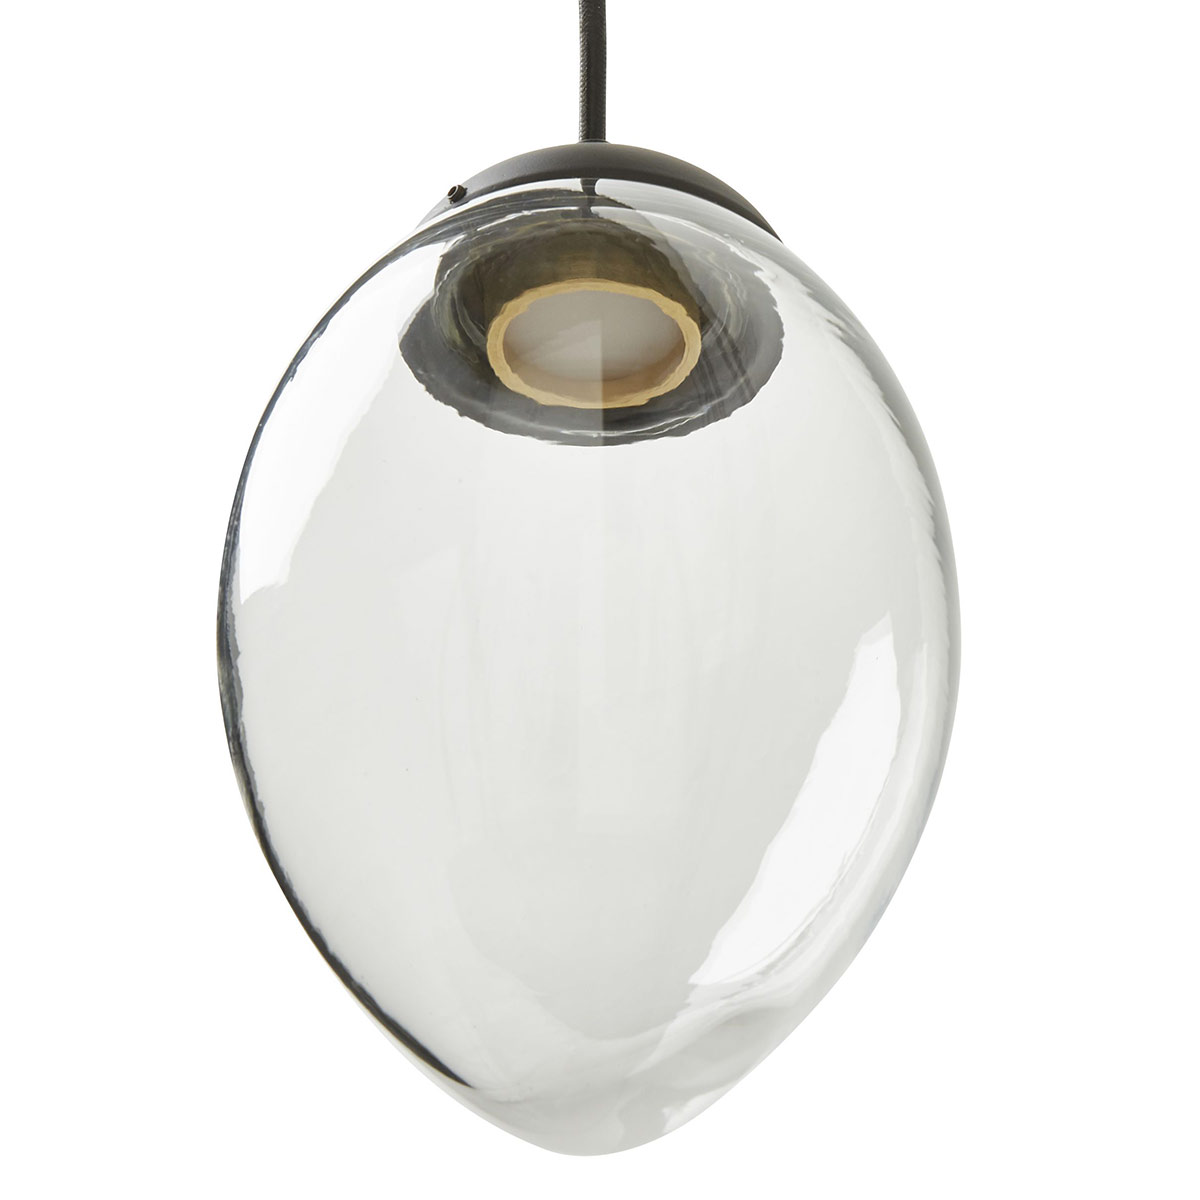 Reihe aus fünf Glasschirm-Hängeleuchten VITROLO (LED) auf Leiste: Glasschirm in länglicher Zapfen-Form, klares Glas